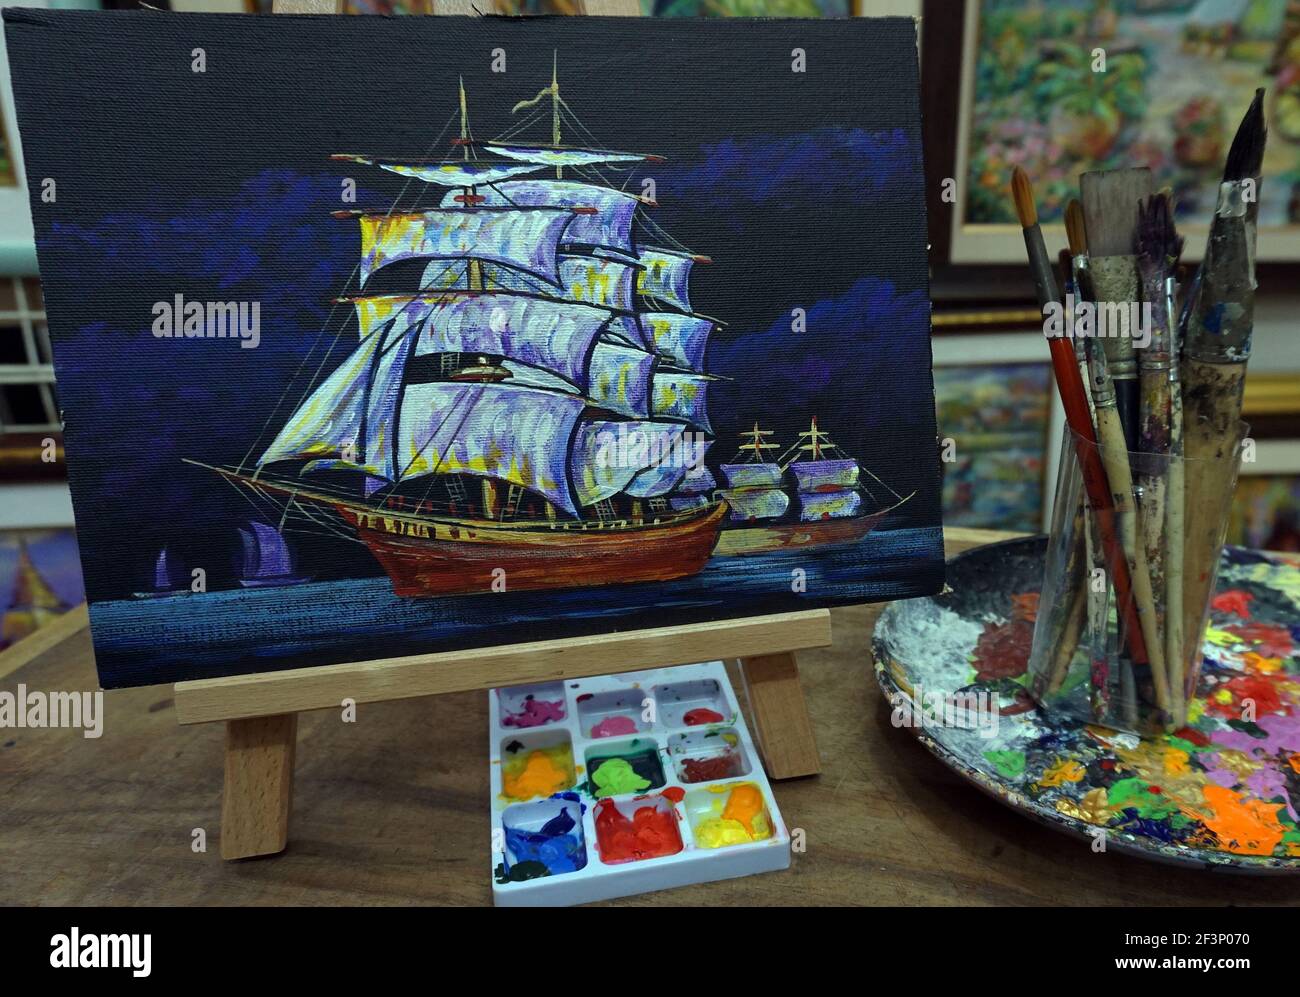 Art peinture huile couleur barque chanceux , voilier , junk boat , Arts visuels Banque D'Images